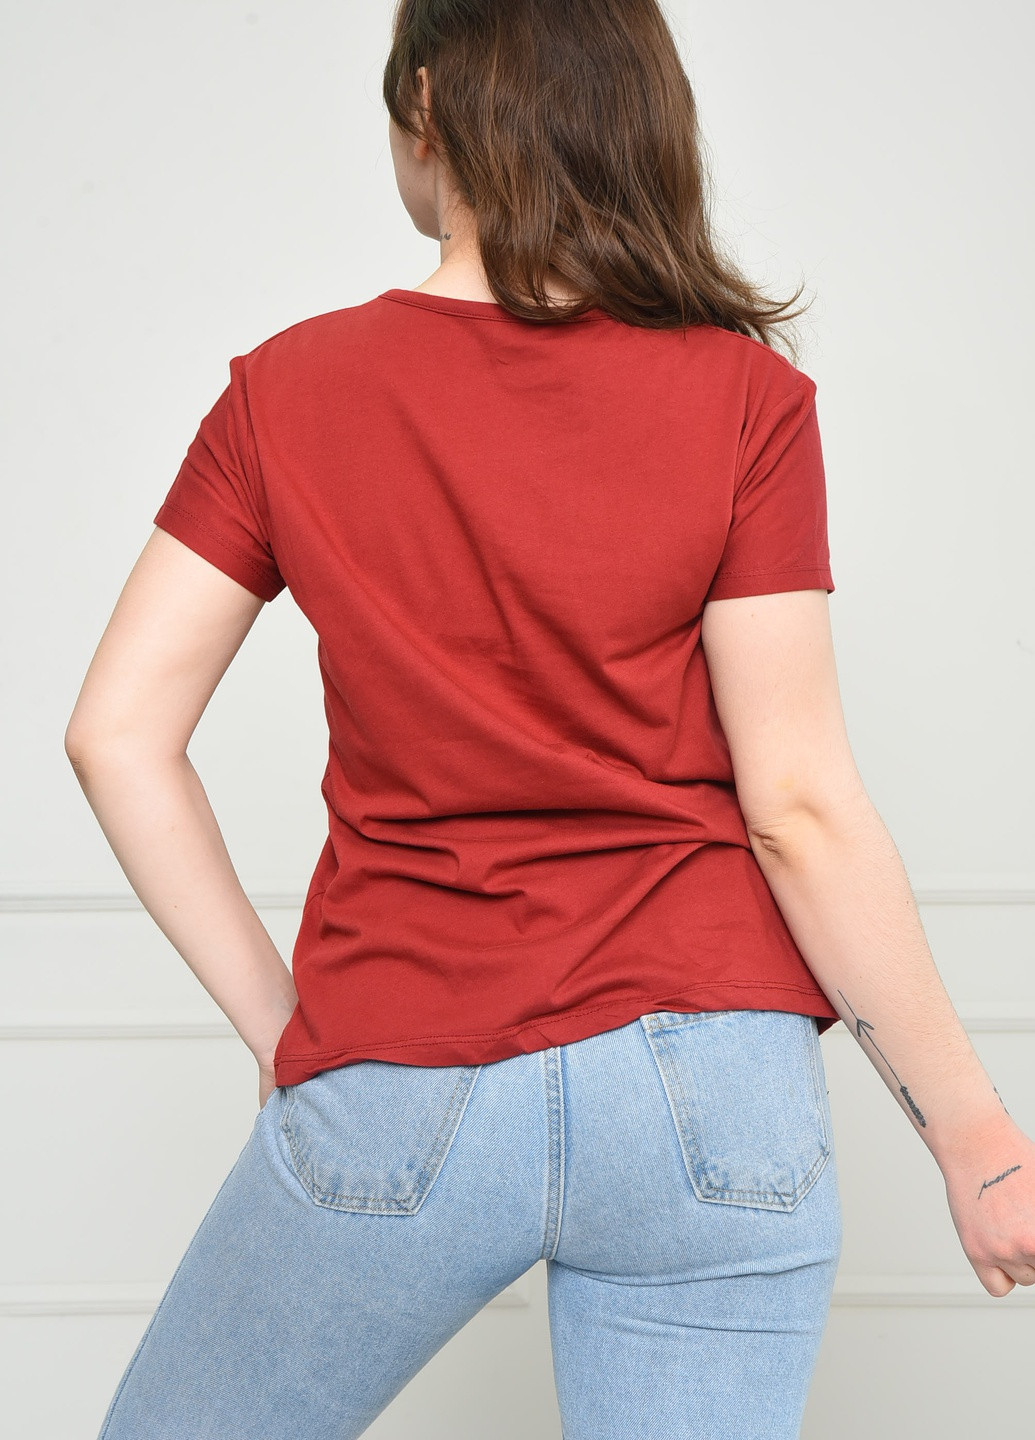 Терракотовая летняя футболка женская терракотового цвета Let's Shop